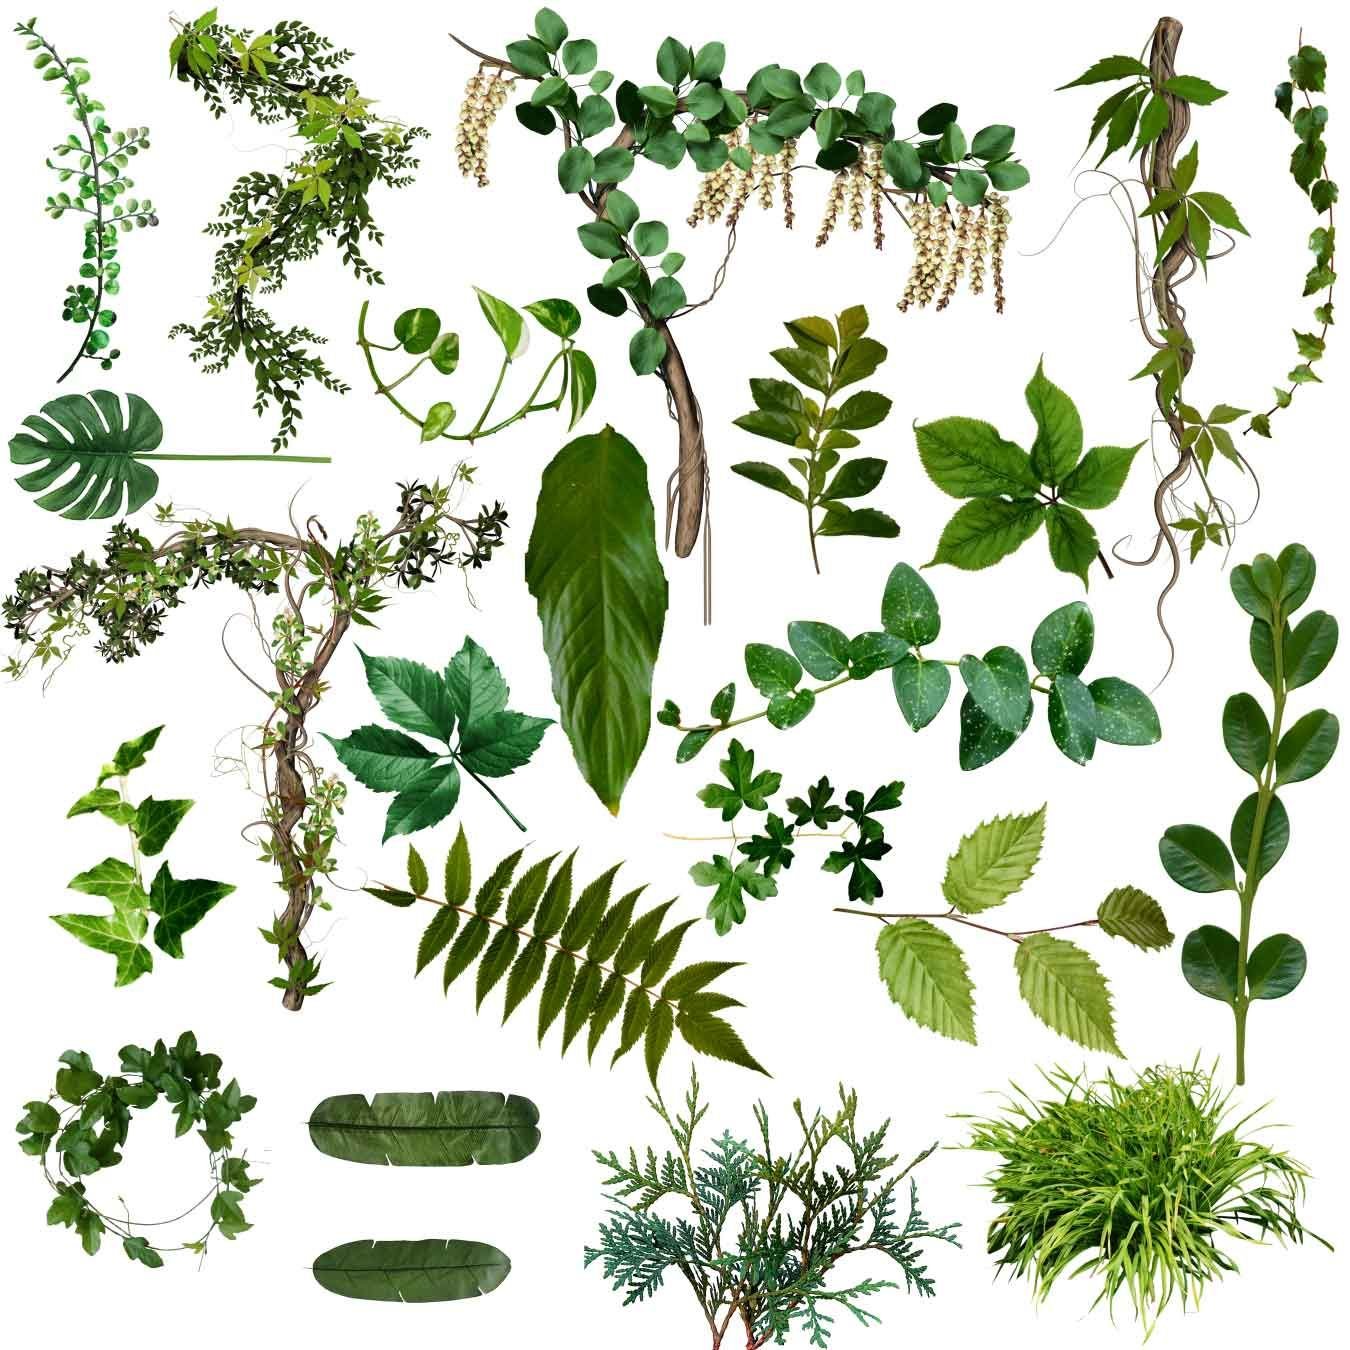 Plants kinds. Листья лианы. Тропические лианы. Растительность иллюстрация. Виды растений листики.